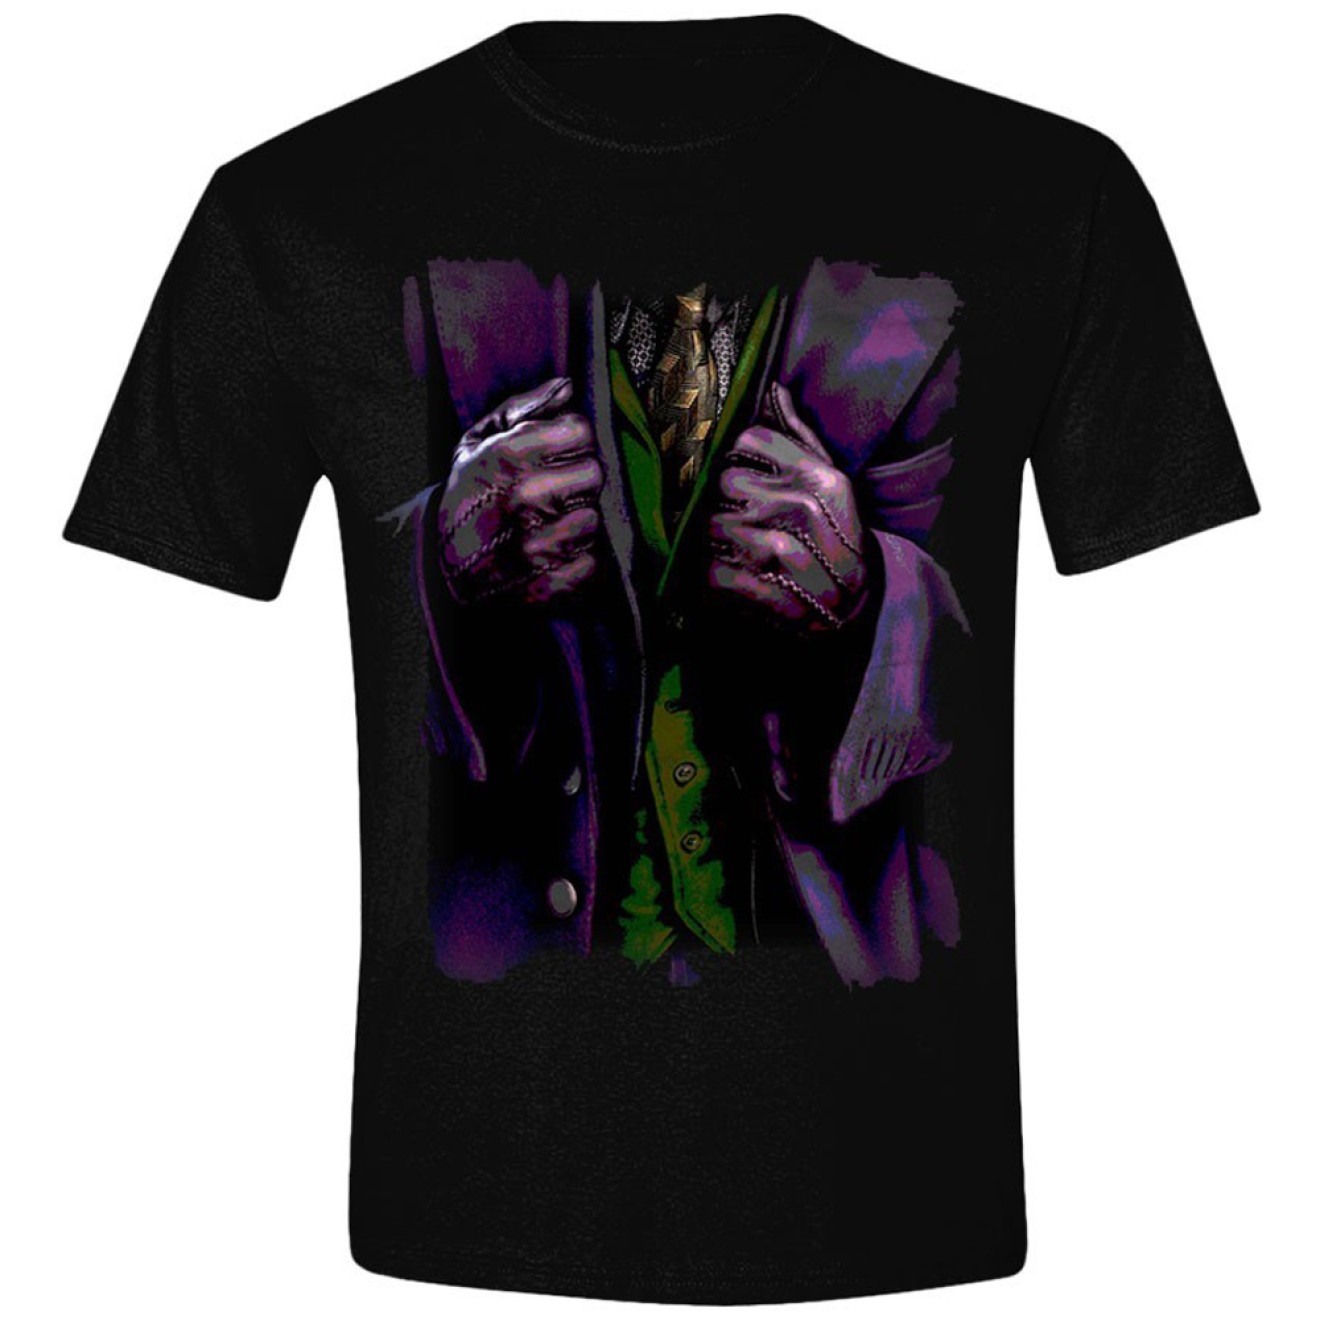 Batman - Children's T-Shirt Costume Joker